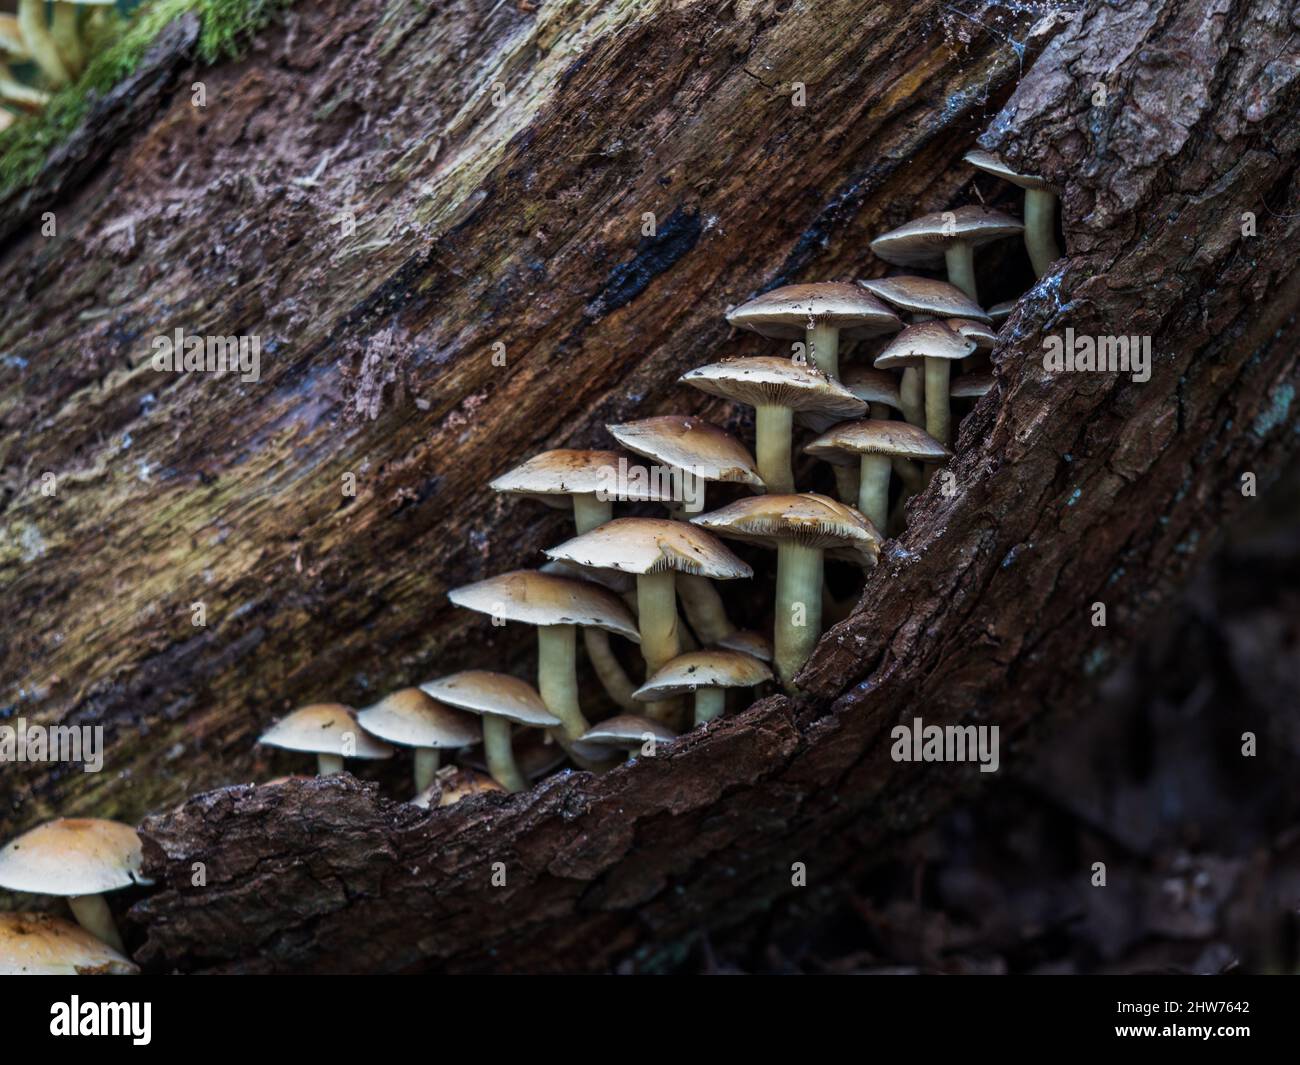 Sulphur Tuft Mushroom on a Rotting Tree Log Stock Photo